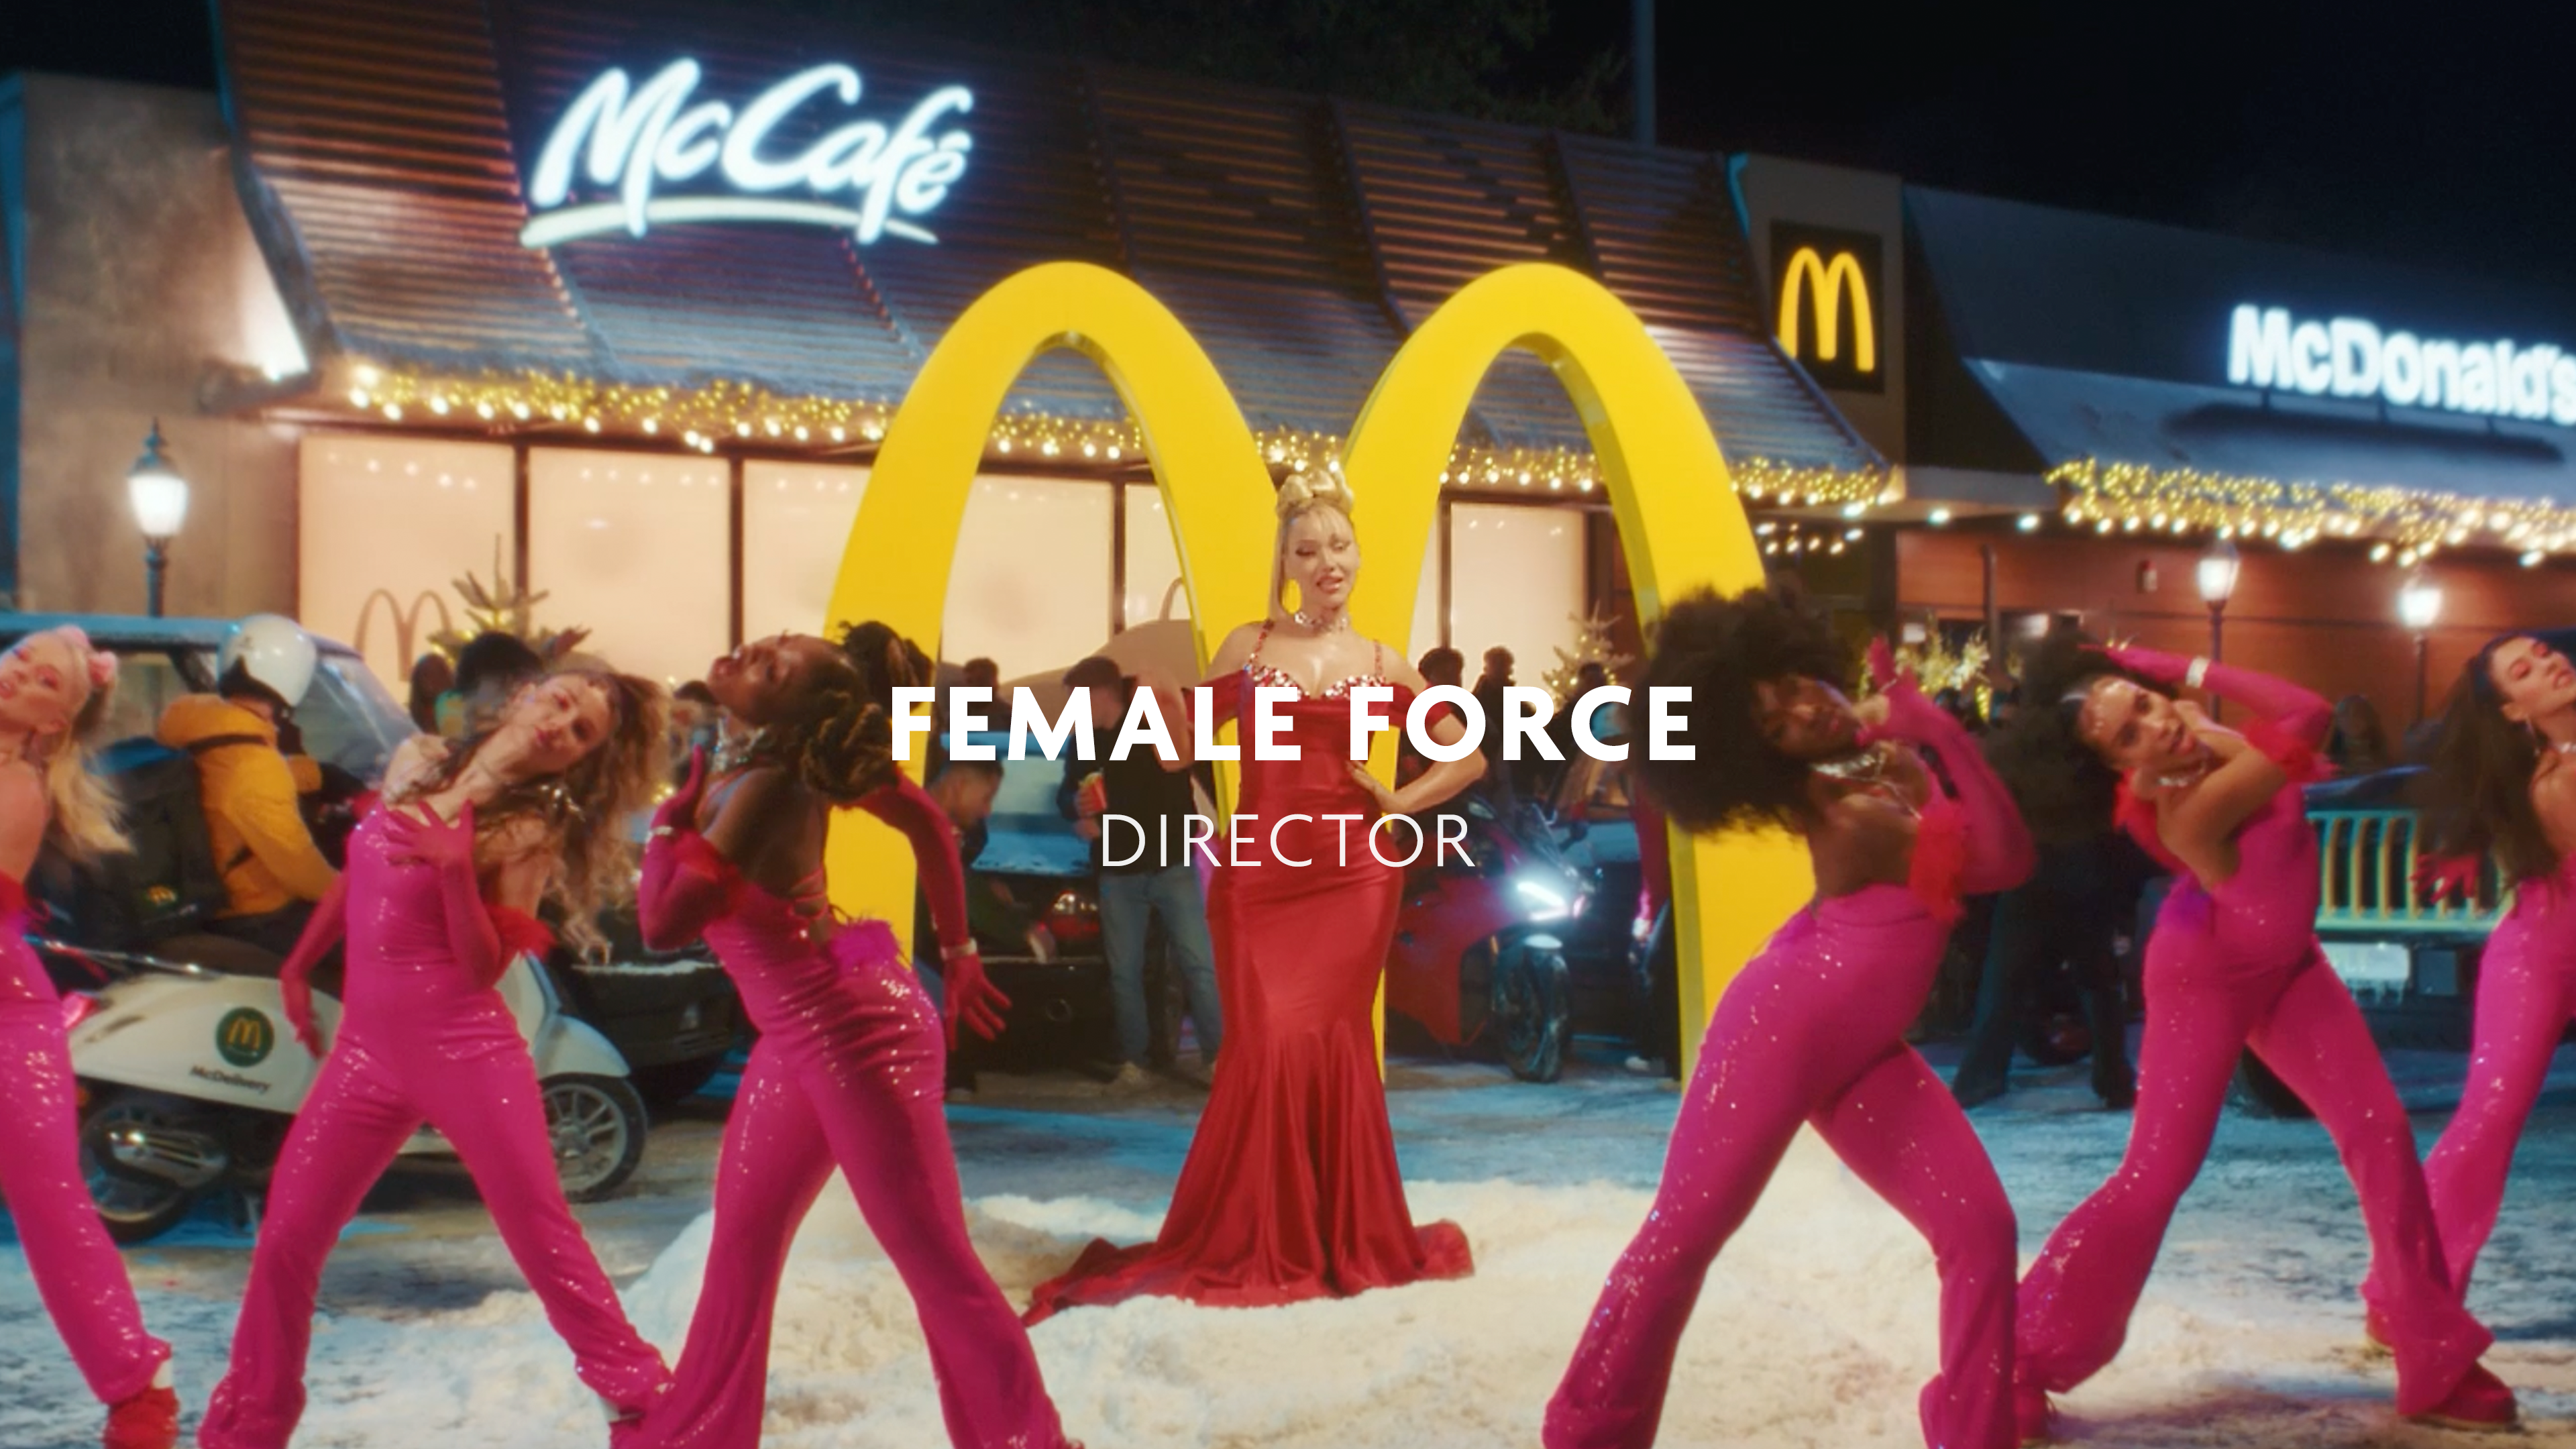 FEMALE FORCE